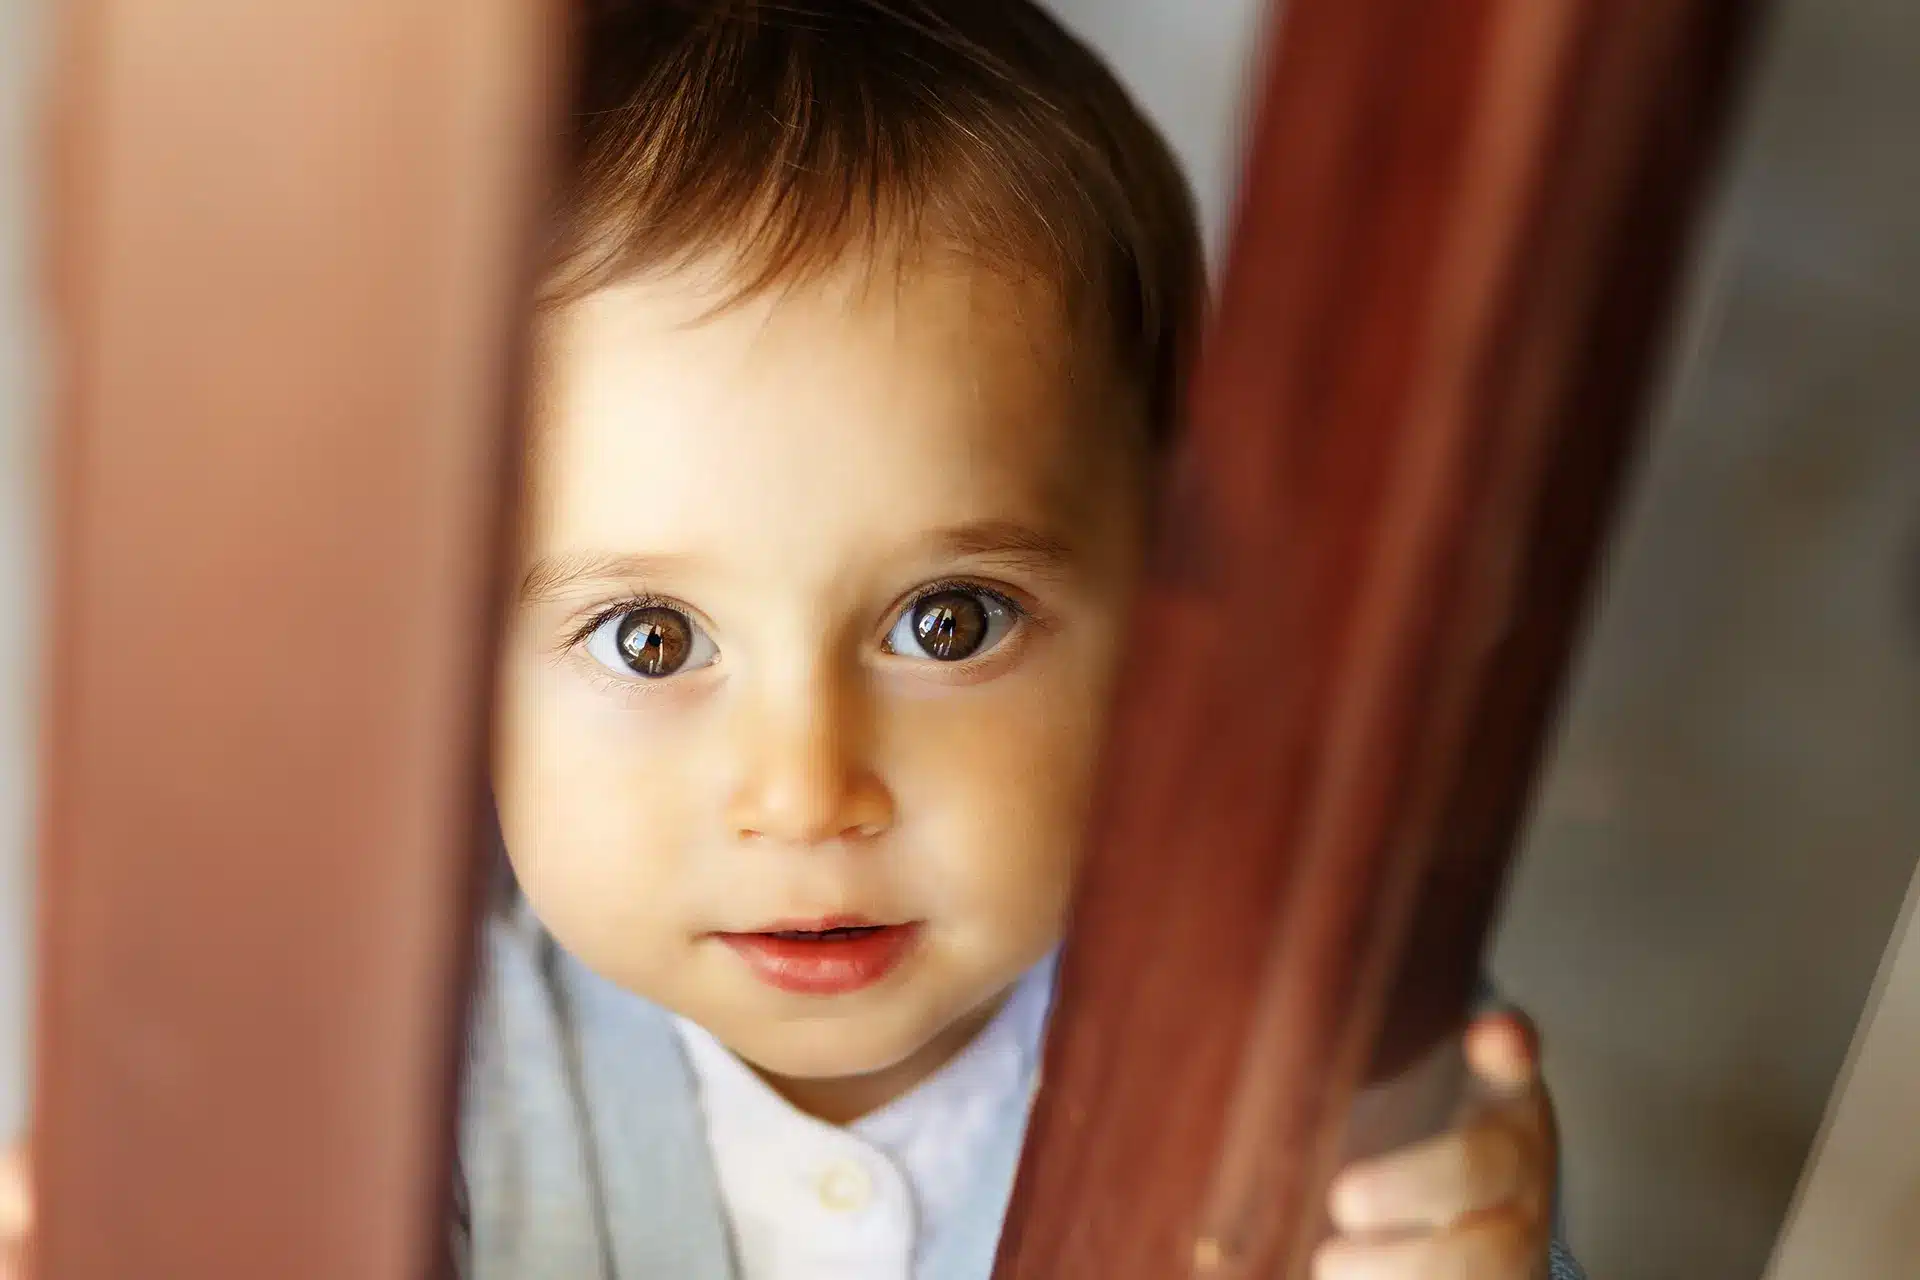 Un bébé qui sort d'une porte en bois est présenté dans le guide ultime des jouets Montessori pour les enfants de 1 an.